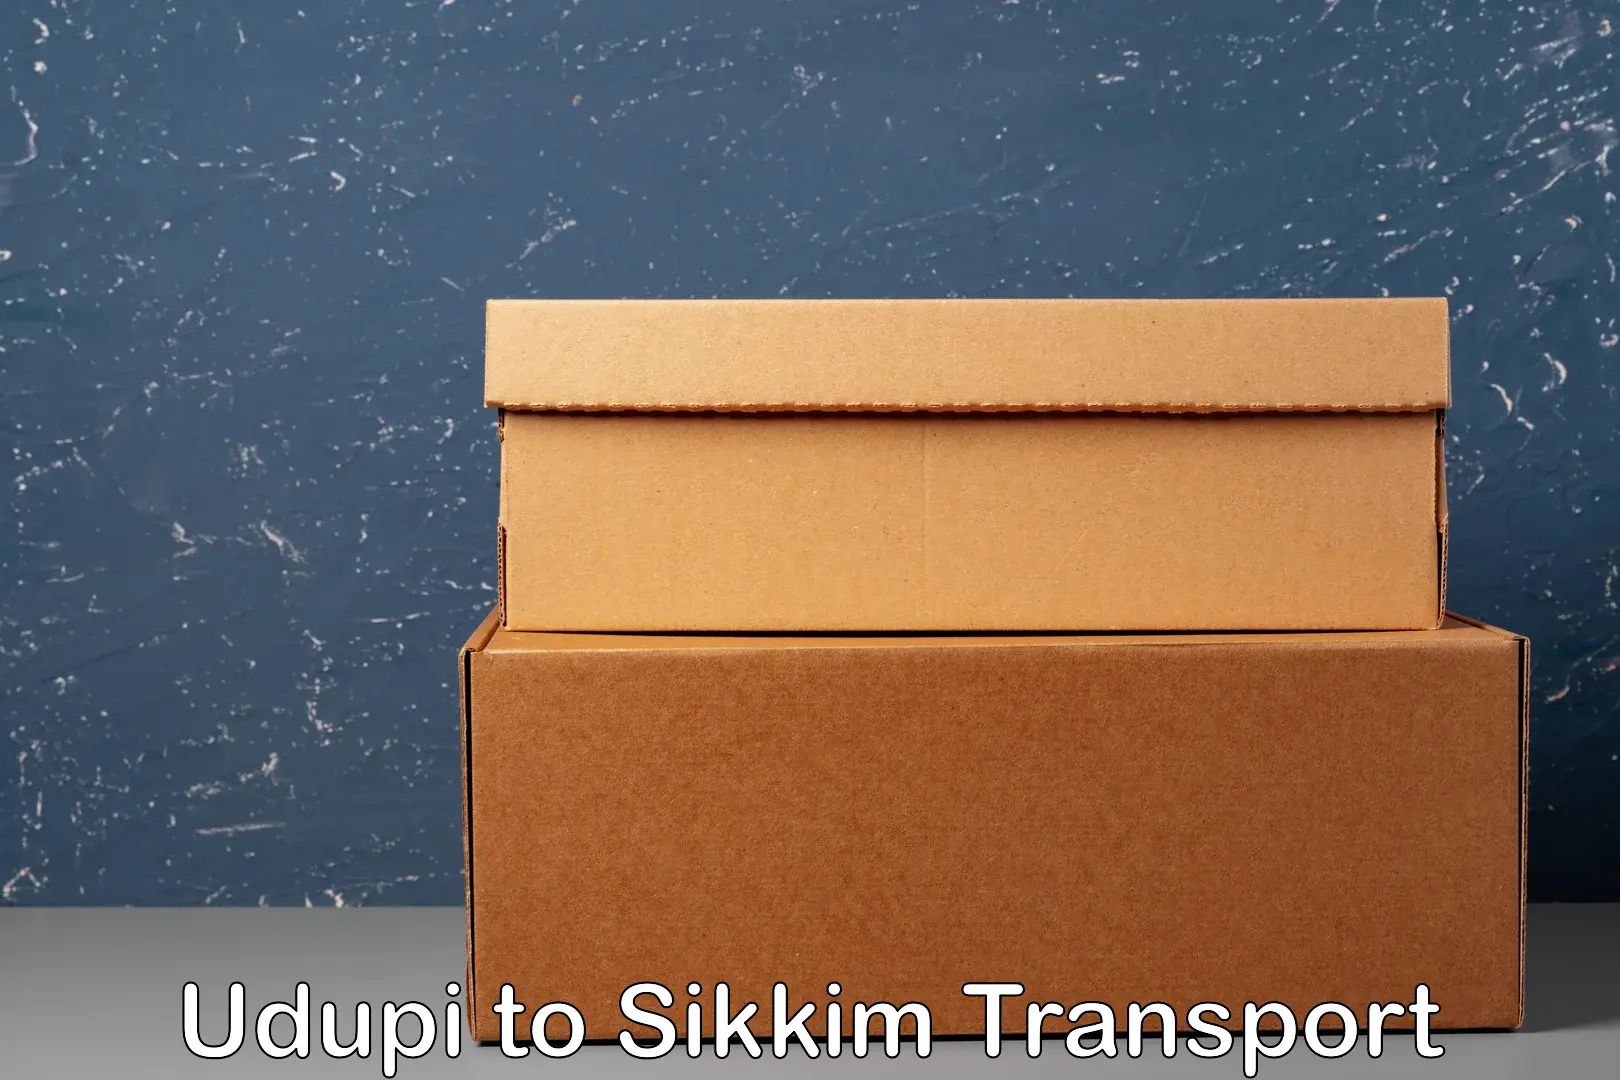 Daily transport service Udupi to Sikkim